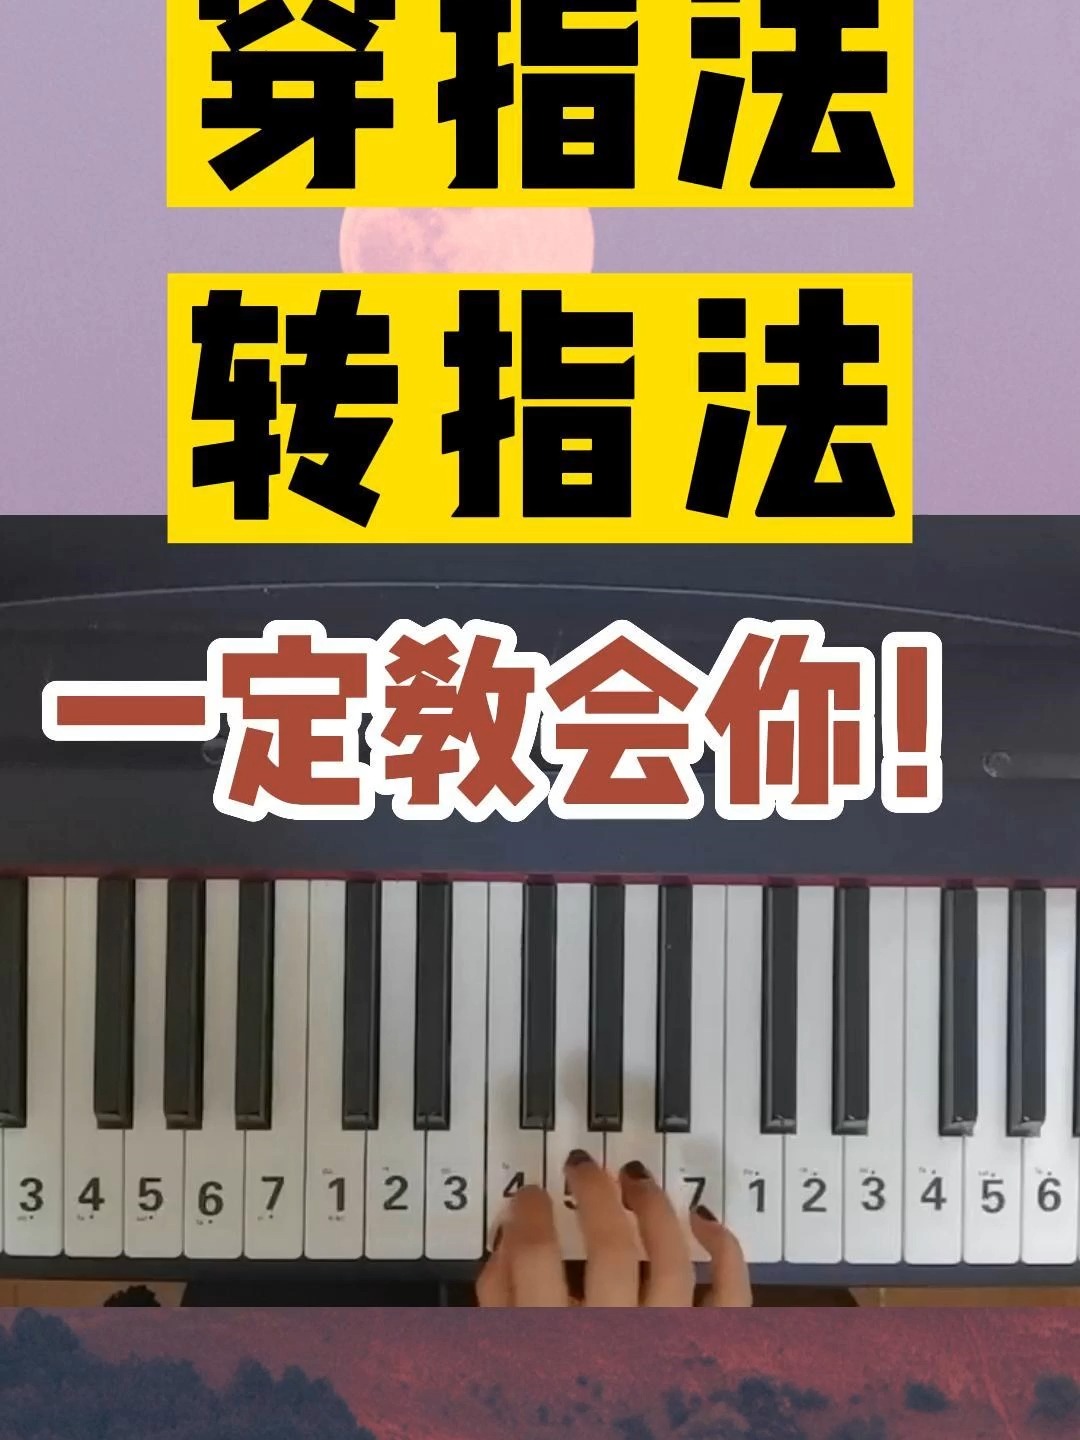 新手弹钢琴最简单指法图片